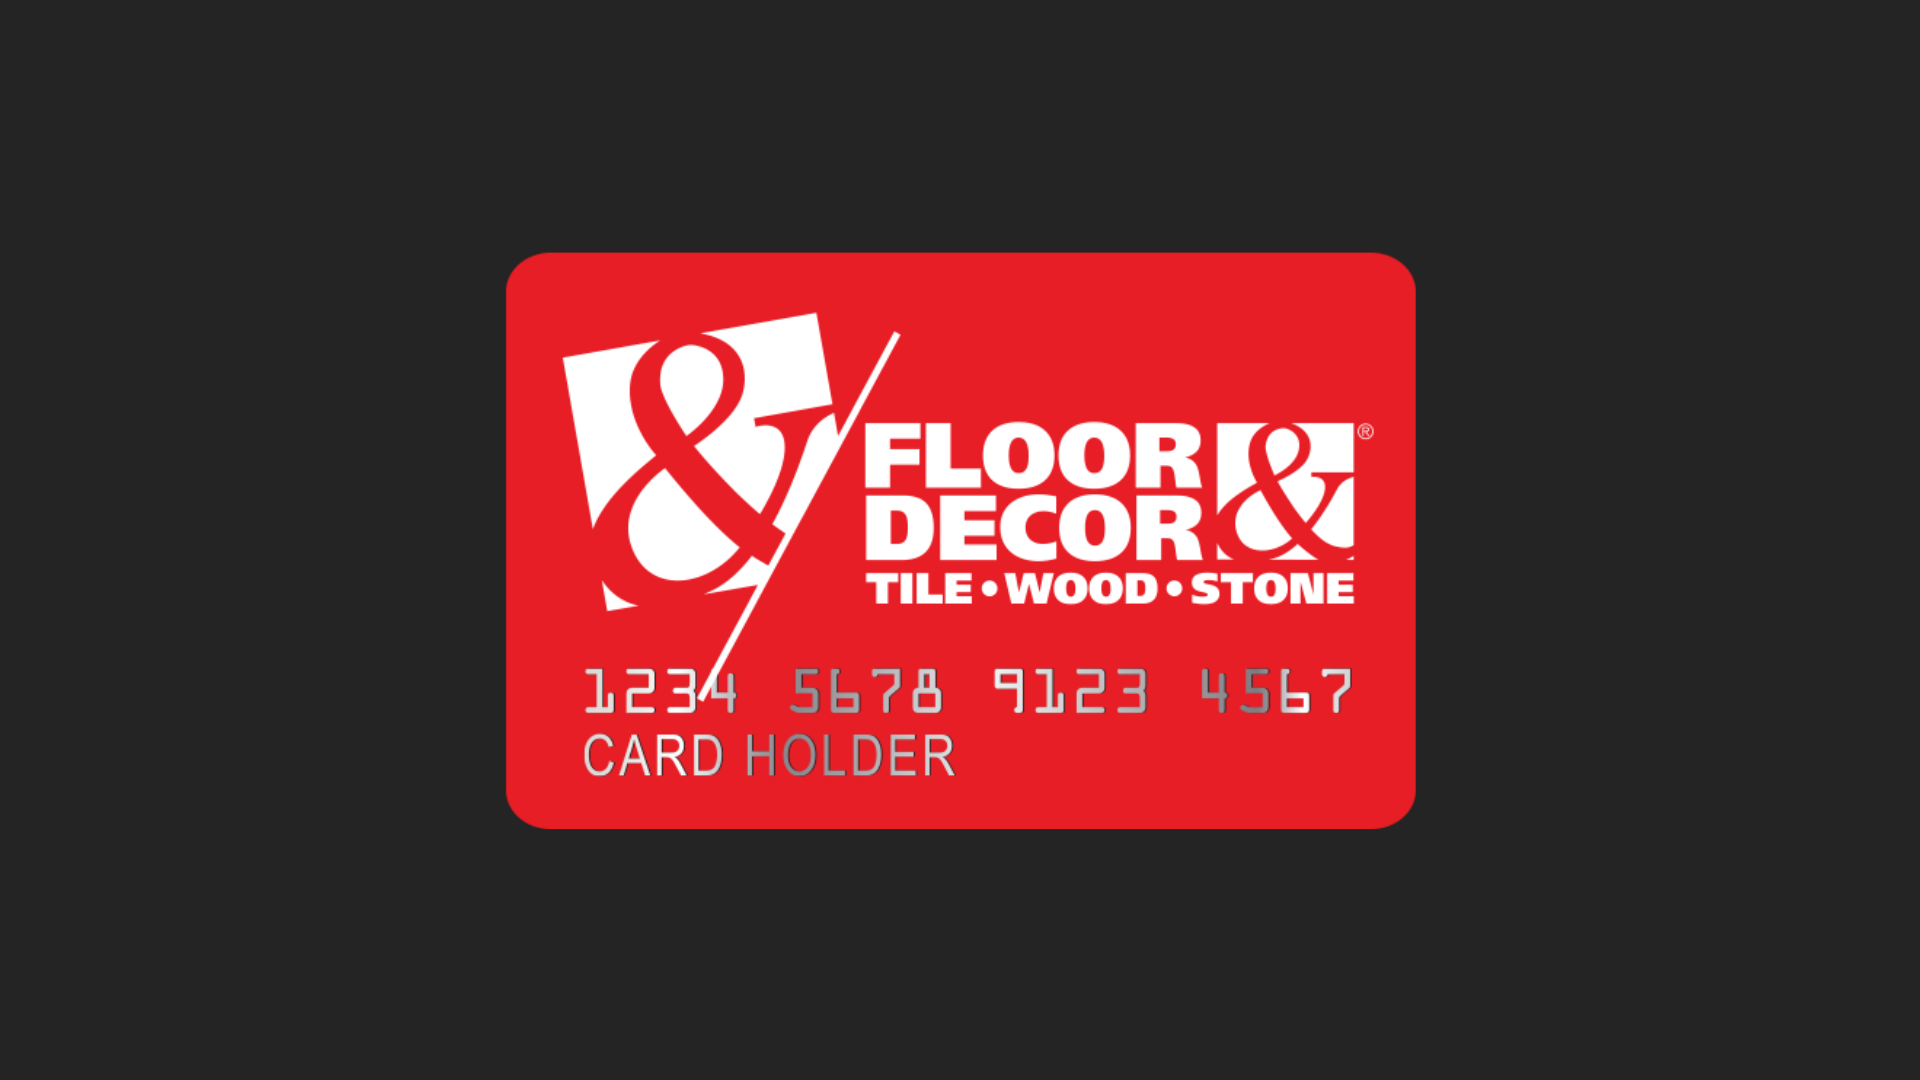 Conheça o cartão Floor e Decor. Fonte: Floor & Decor.